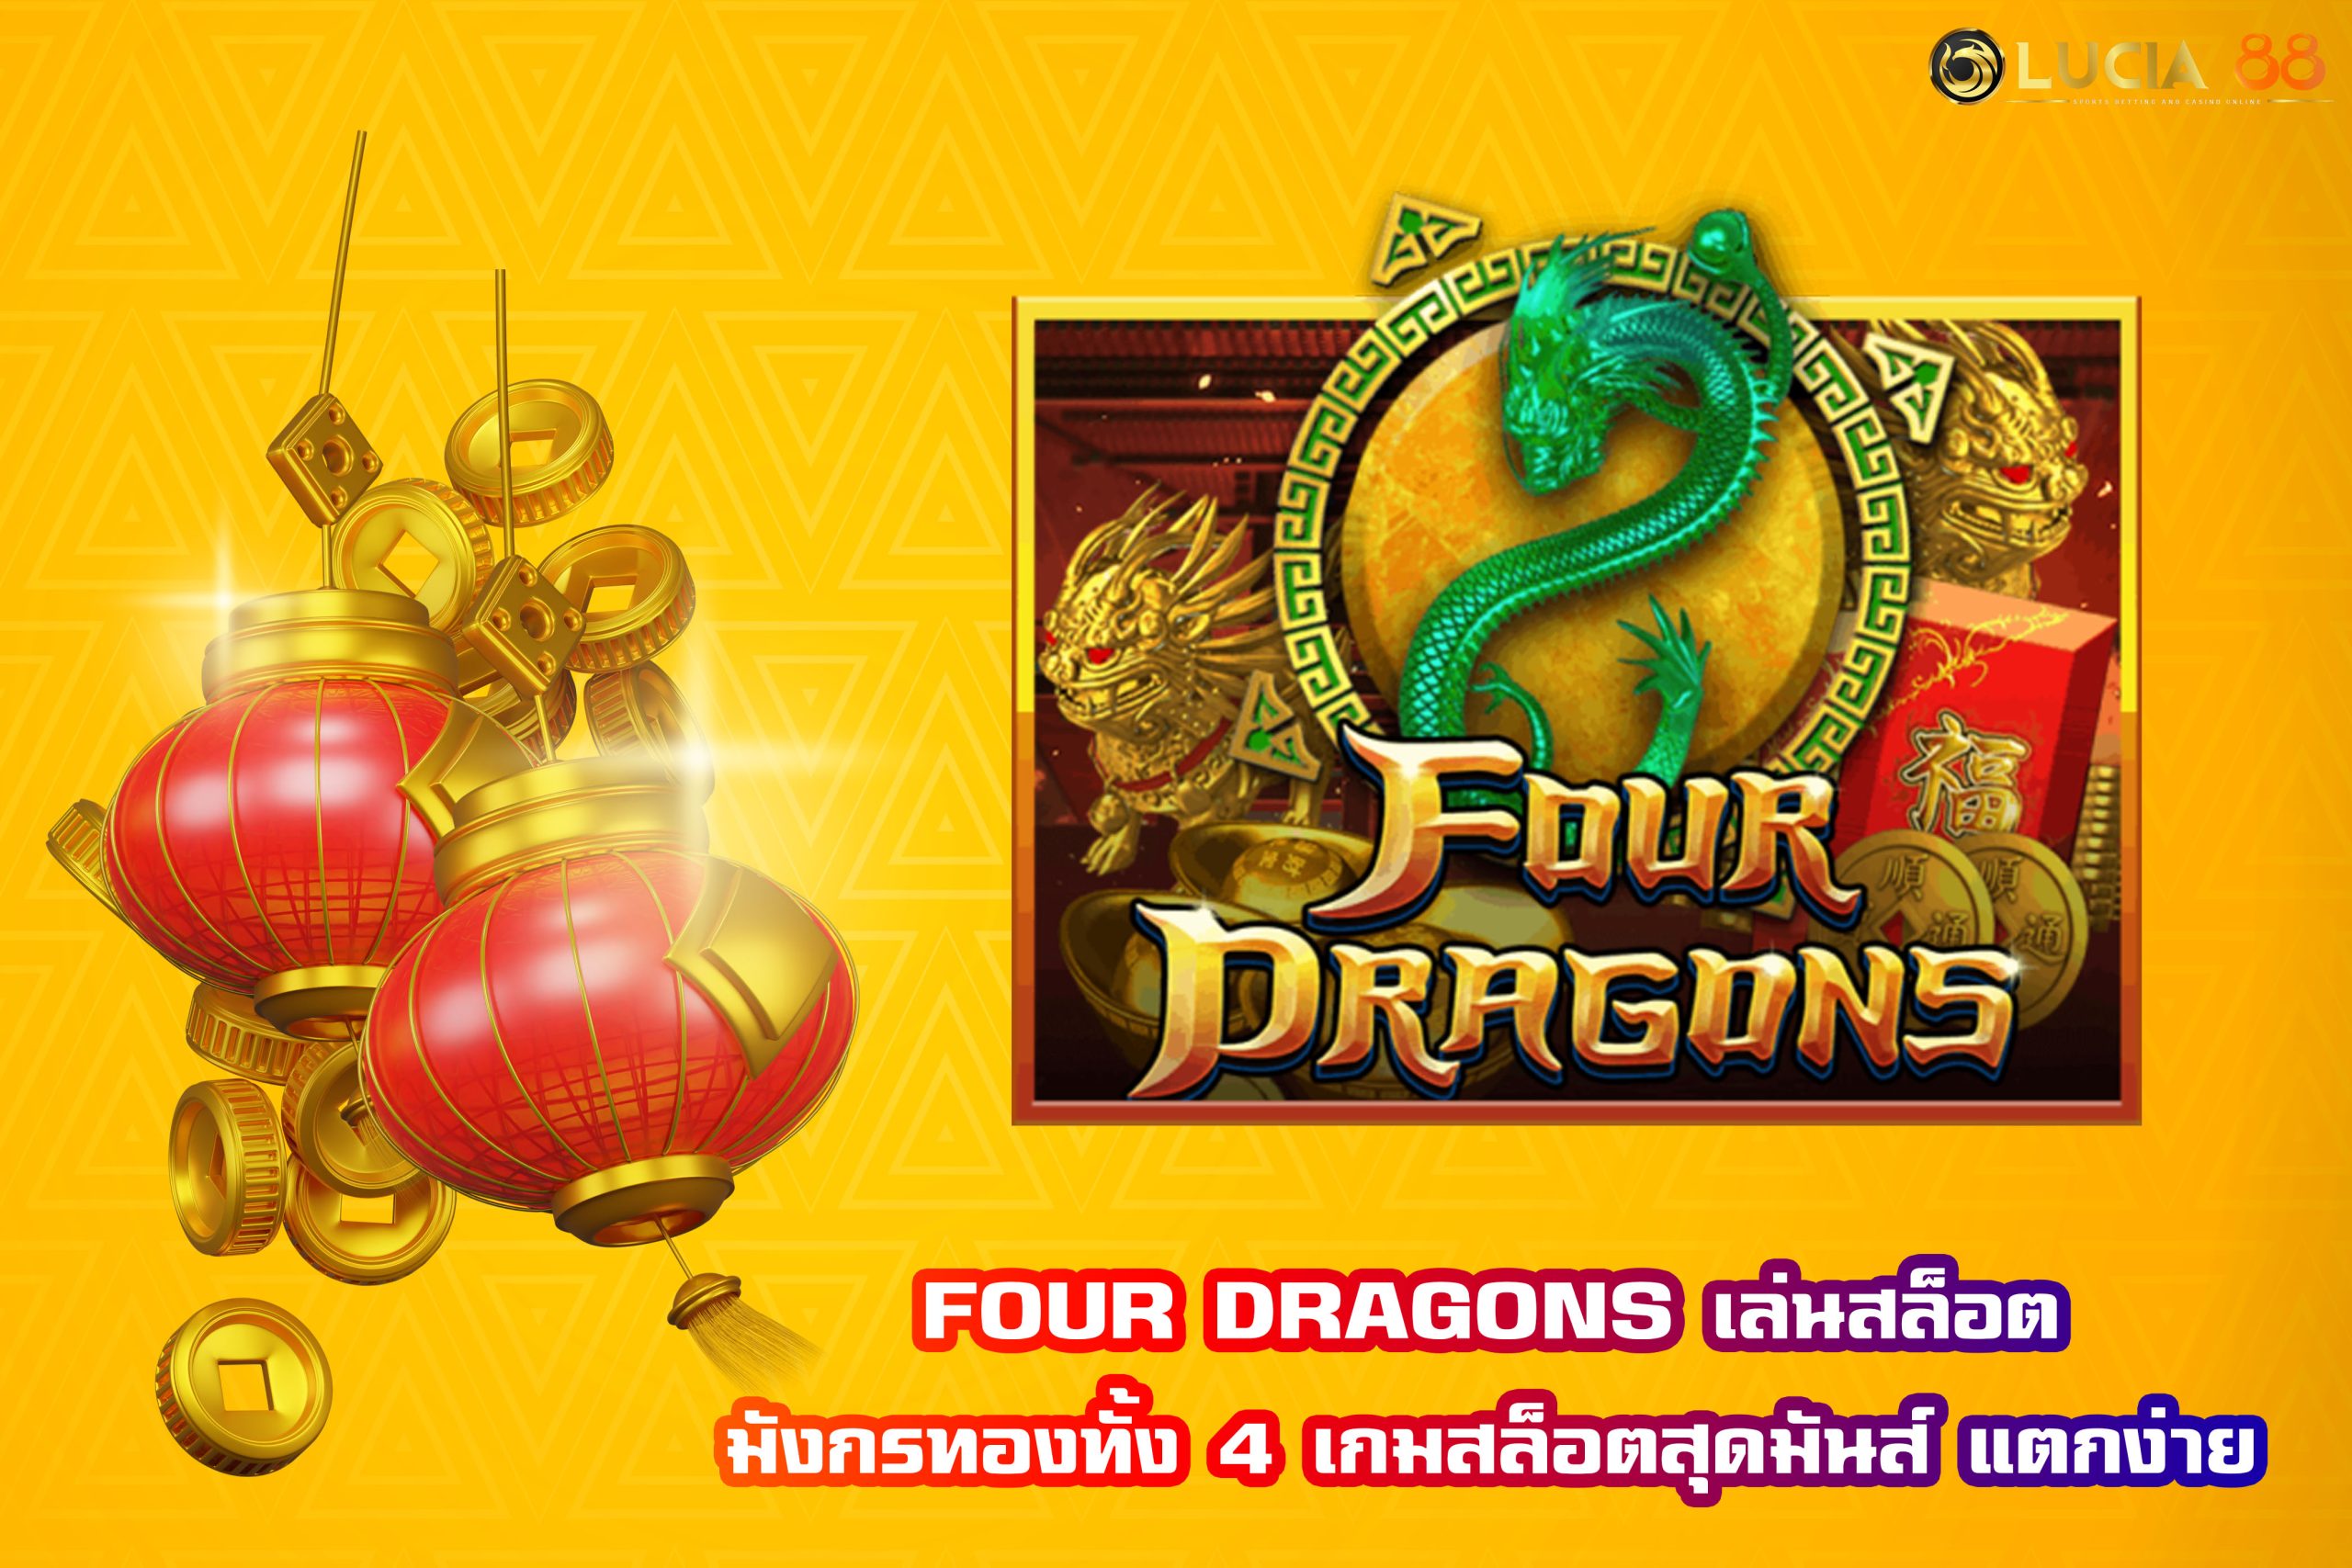 FOUR DRAGONS เล่นสล็อตมังกรทองทั้ง 4 เกมสล็อตสุดมันส์ แตกง่าย